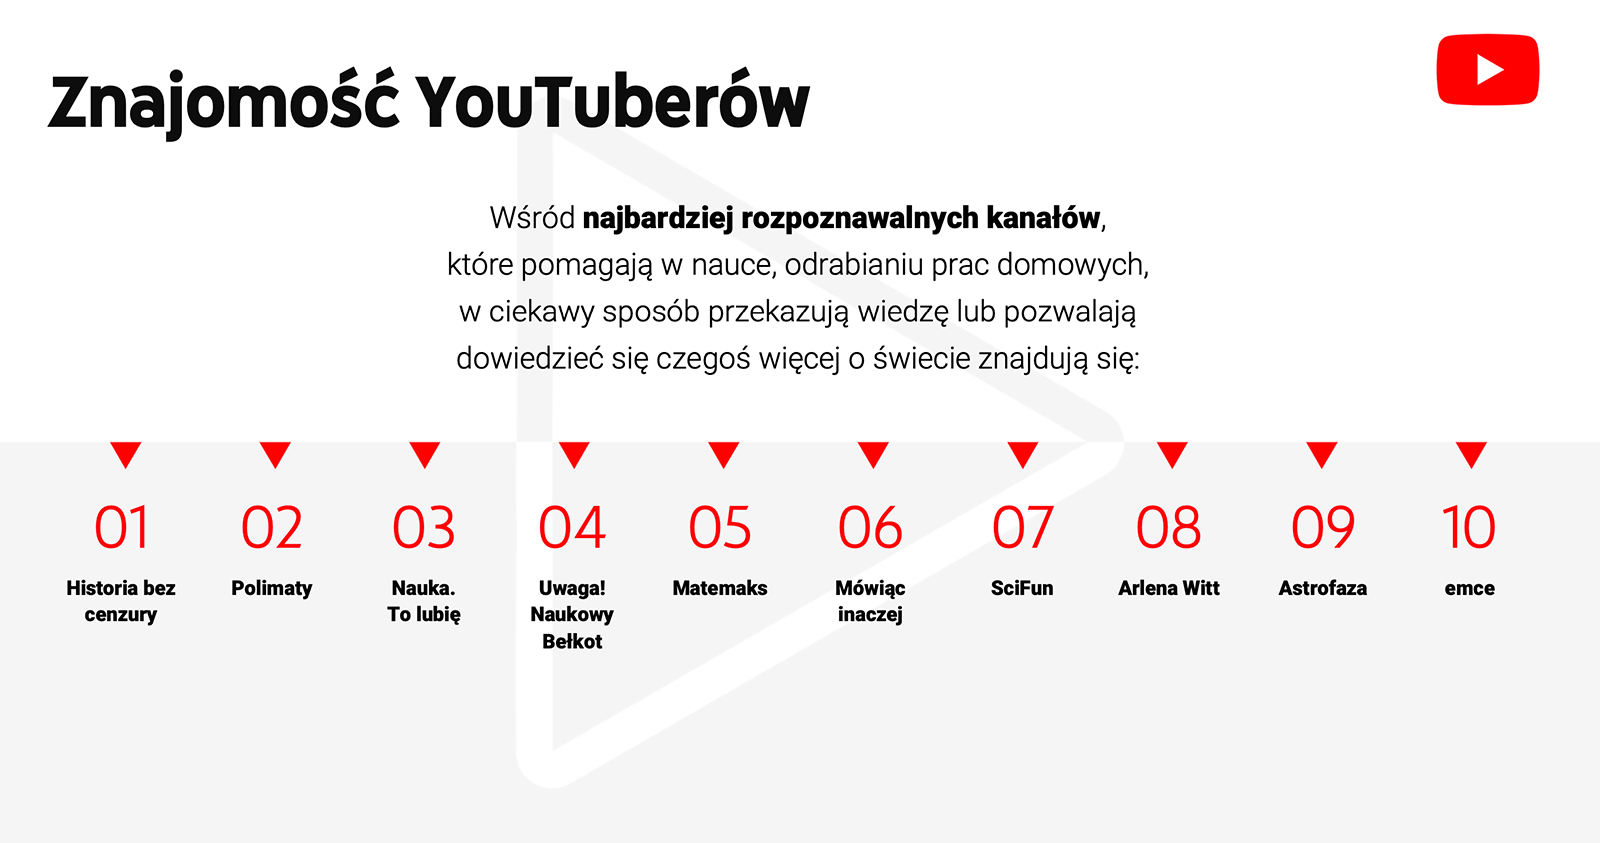 TOP kanały edukacyjne YouTube PL (2019)